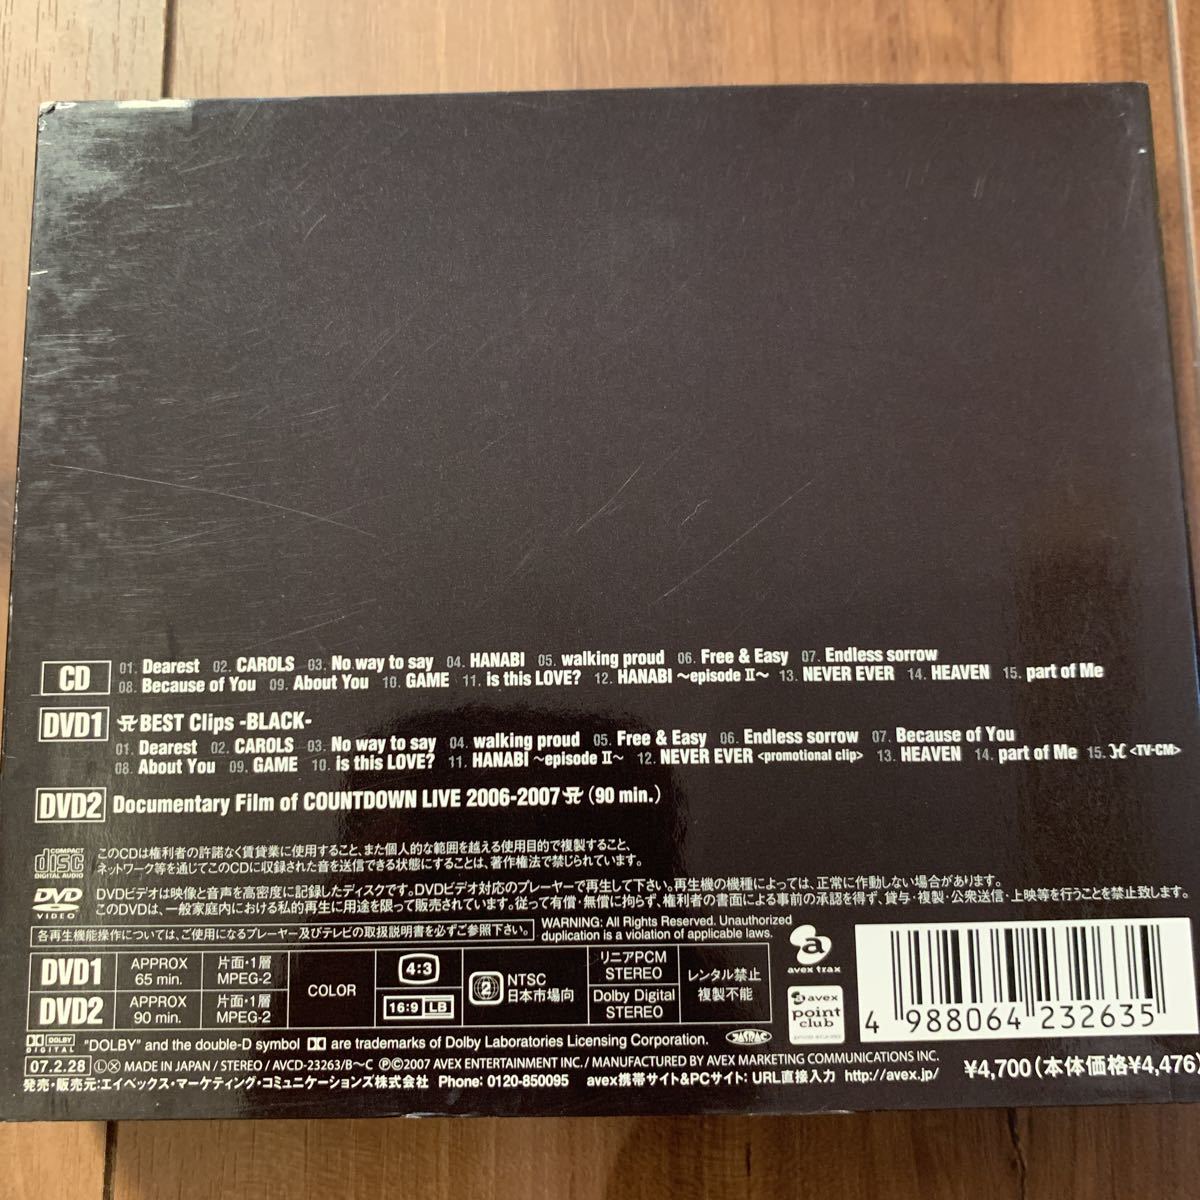 浜崎あゆみ BEST BEST2 -BLACK- DVD clips vol.2 CD+DVD 邦楽 ベスト アルバム_画像7